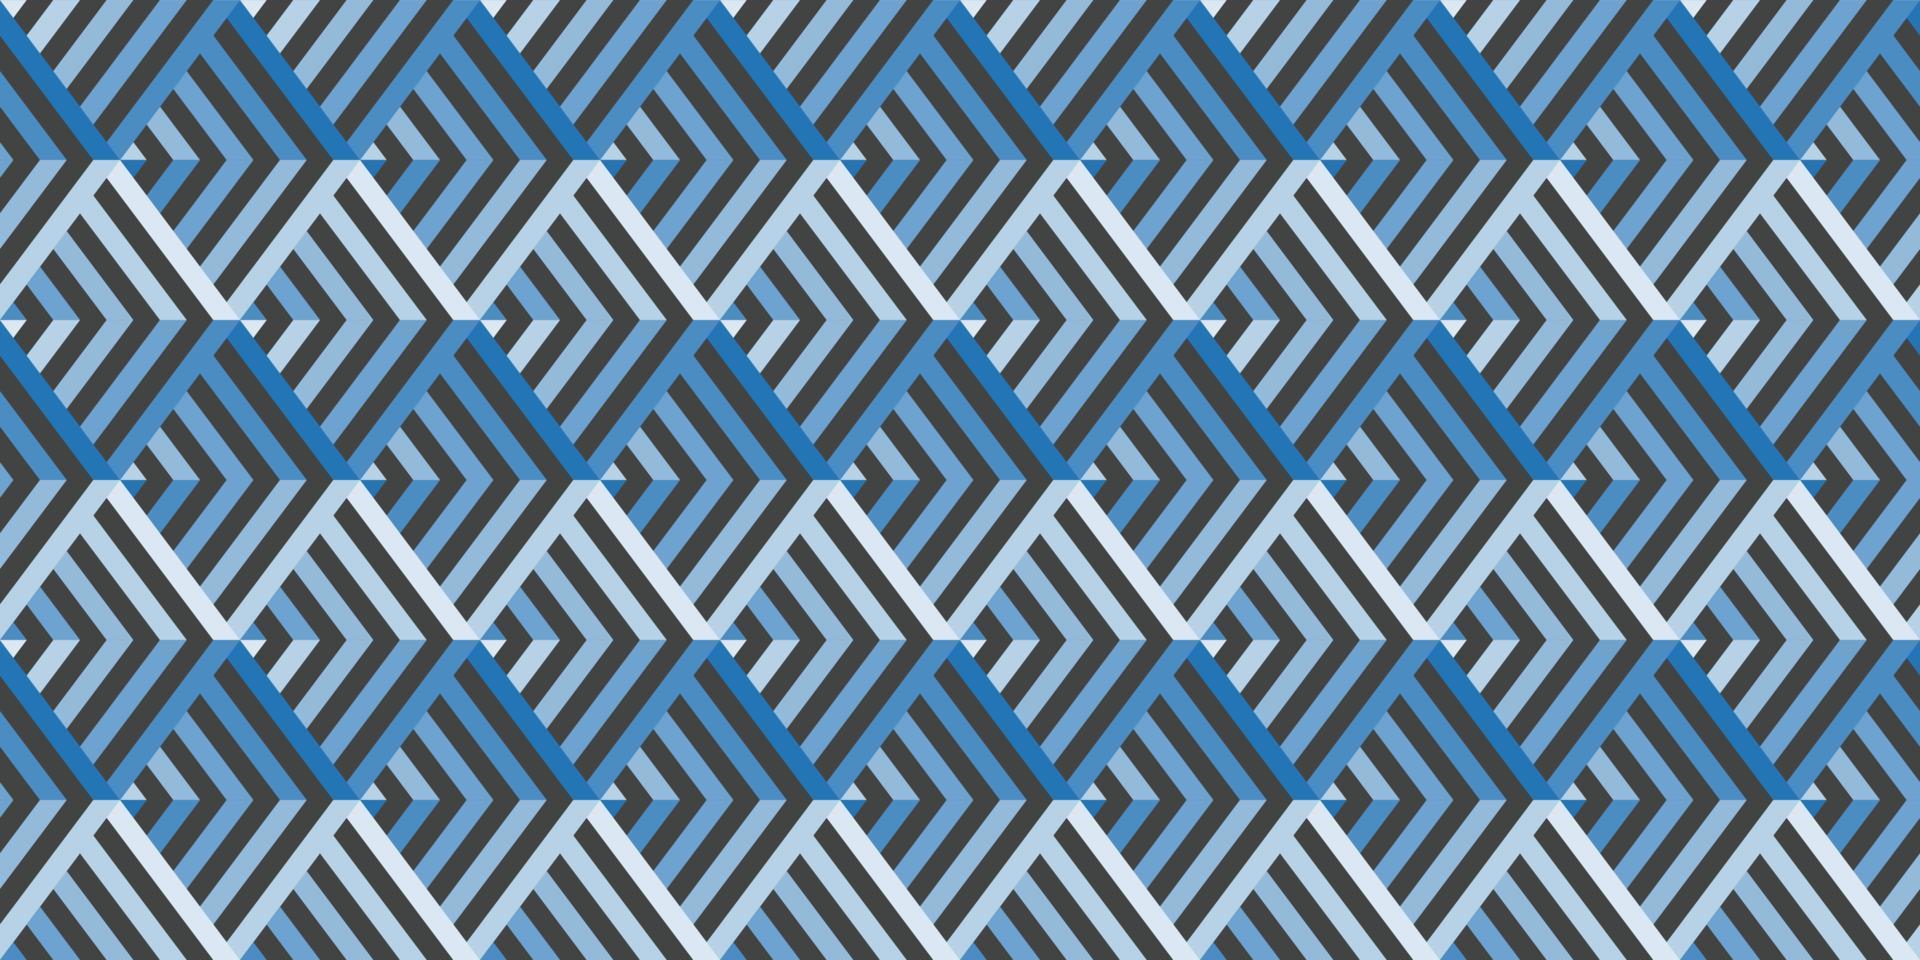 abstrakter blauer geometrischer Farbverlaufshintergrund. Vektorgrundform einer sich wiederholenden Linie oder eines Dreiecks. Hintergrundmuster mit dem Konzept der Hi-Tech-Digitaltechnologie, einfach, modern und futuristisch. vektor